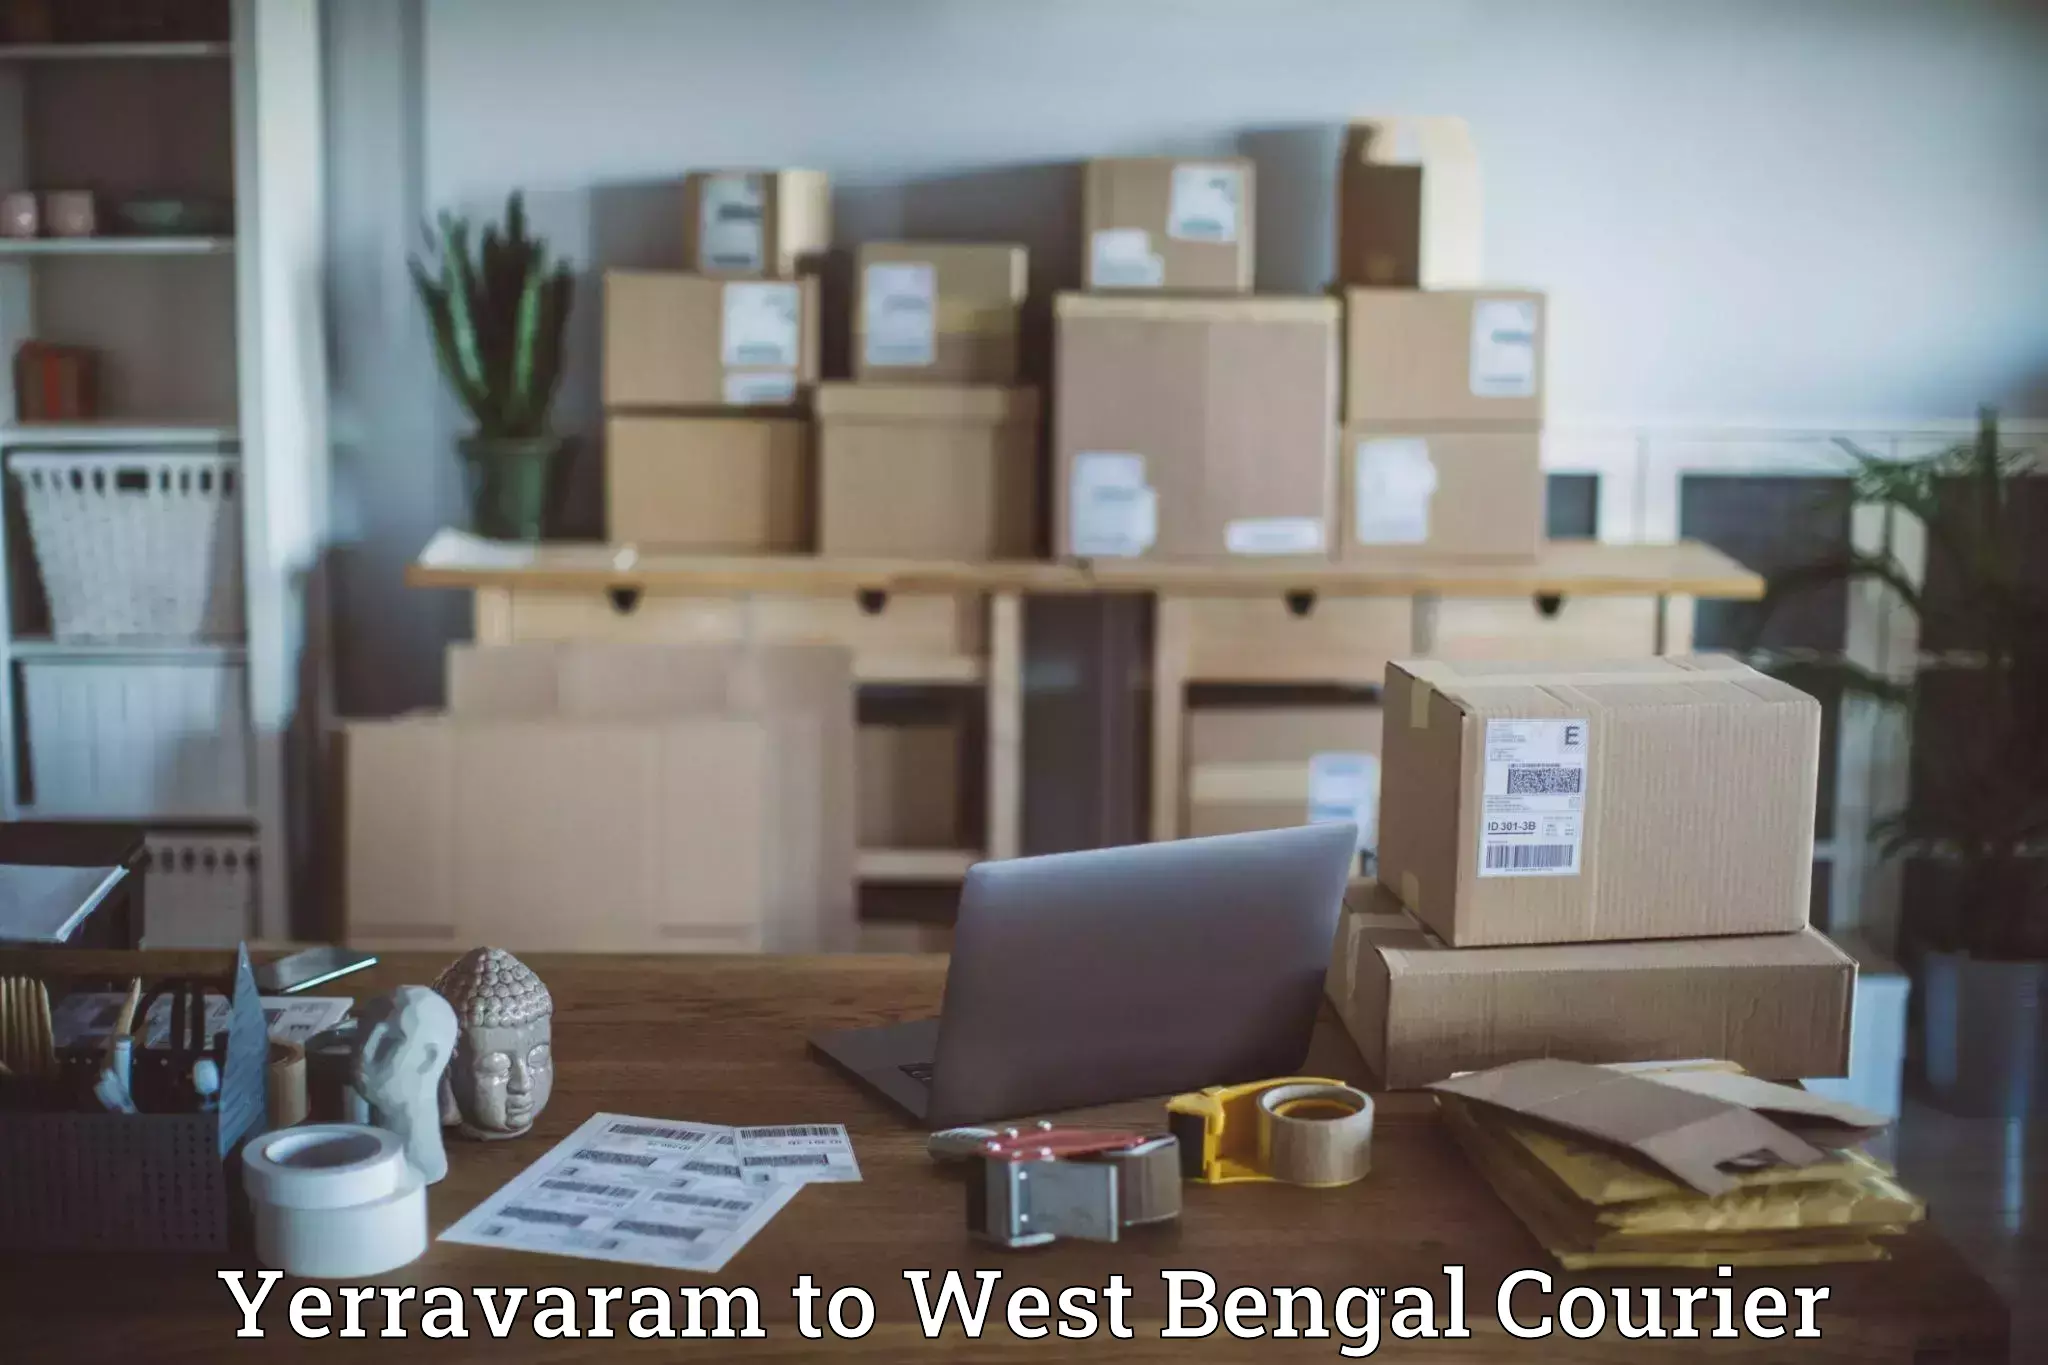 State-of-the-art courier technology Yerravaram to Tarkeshwar